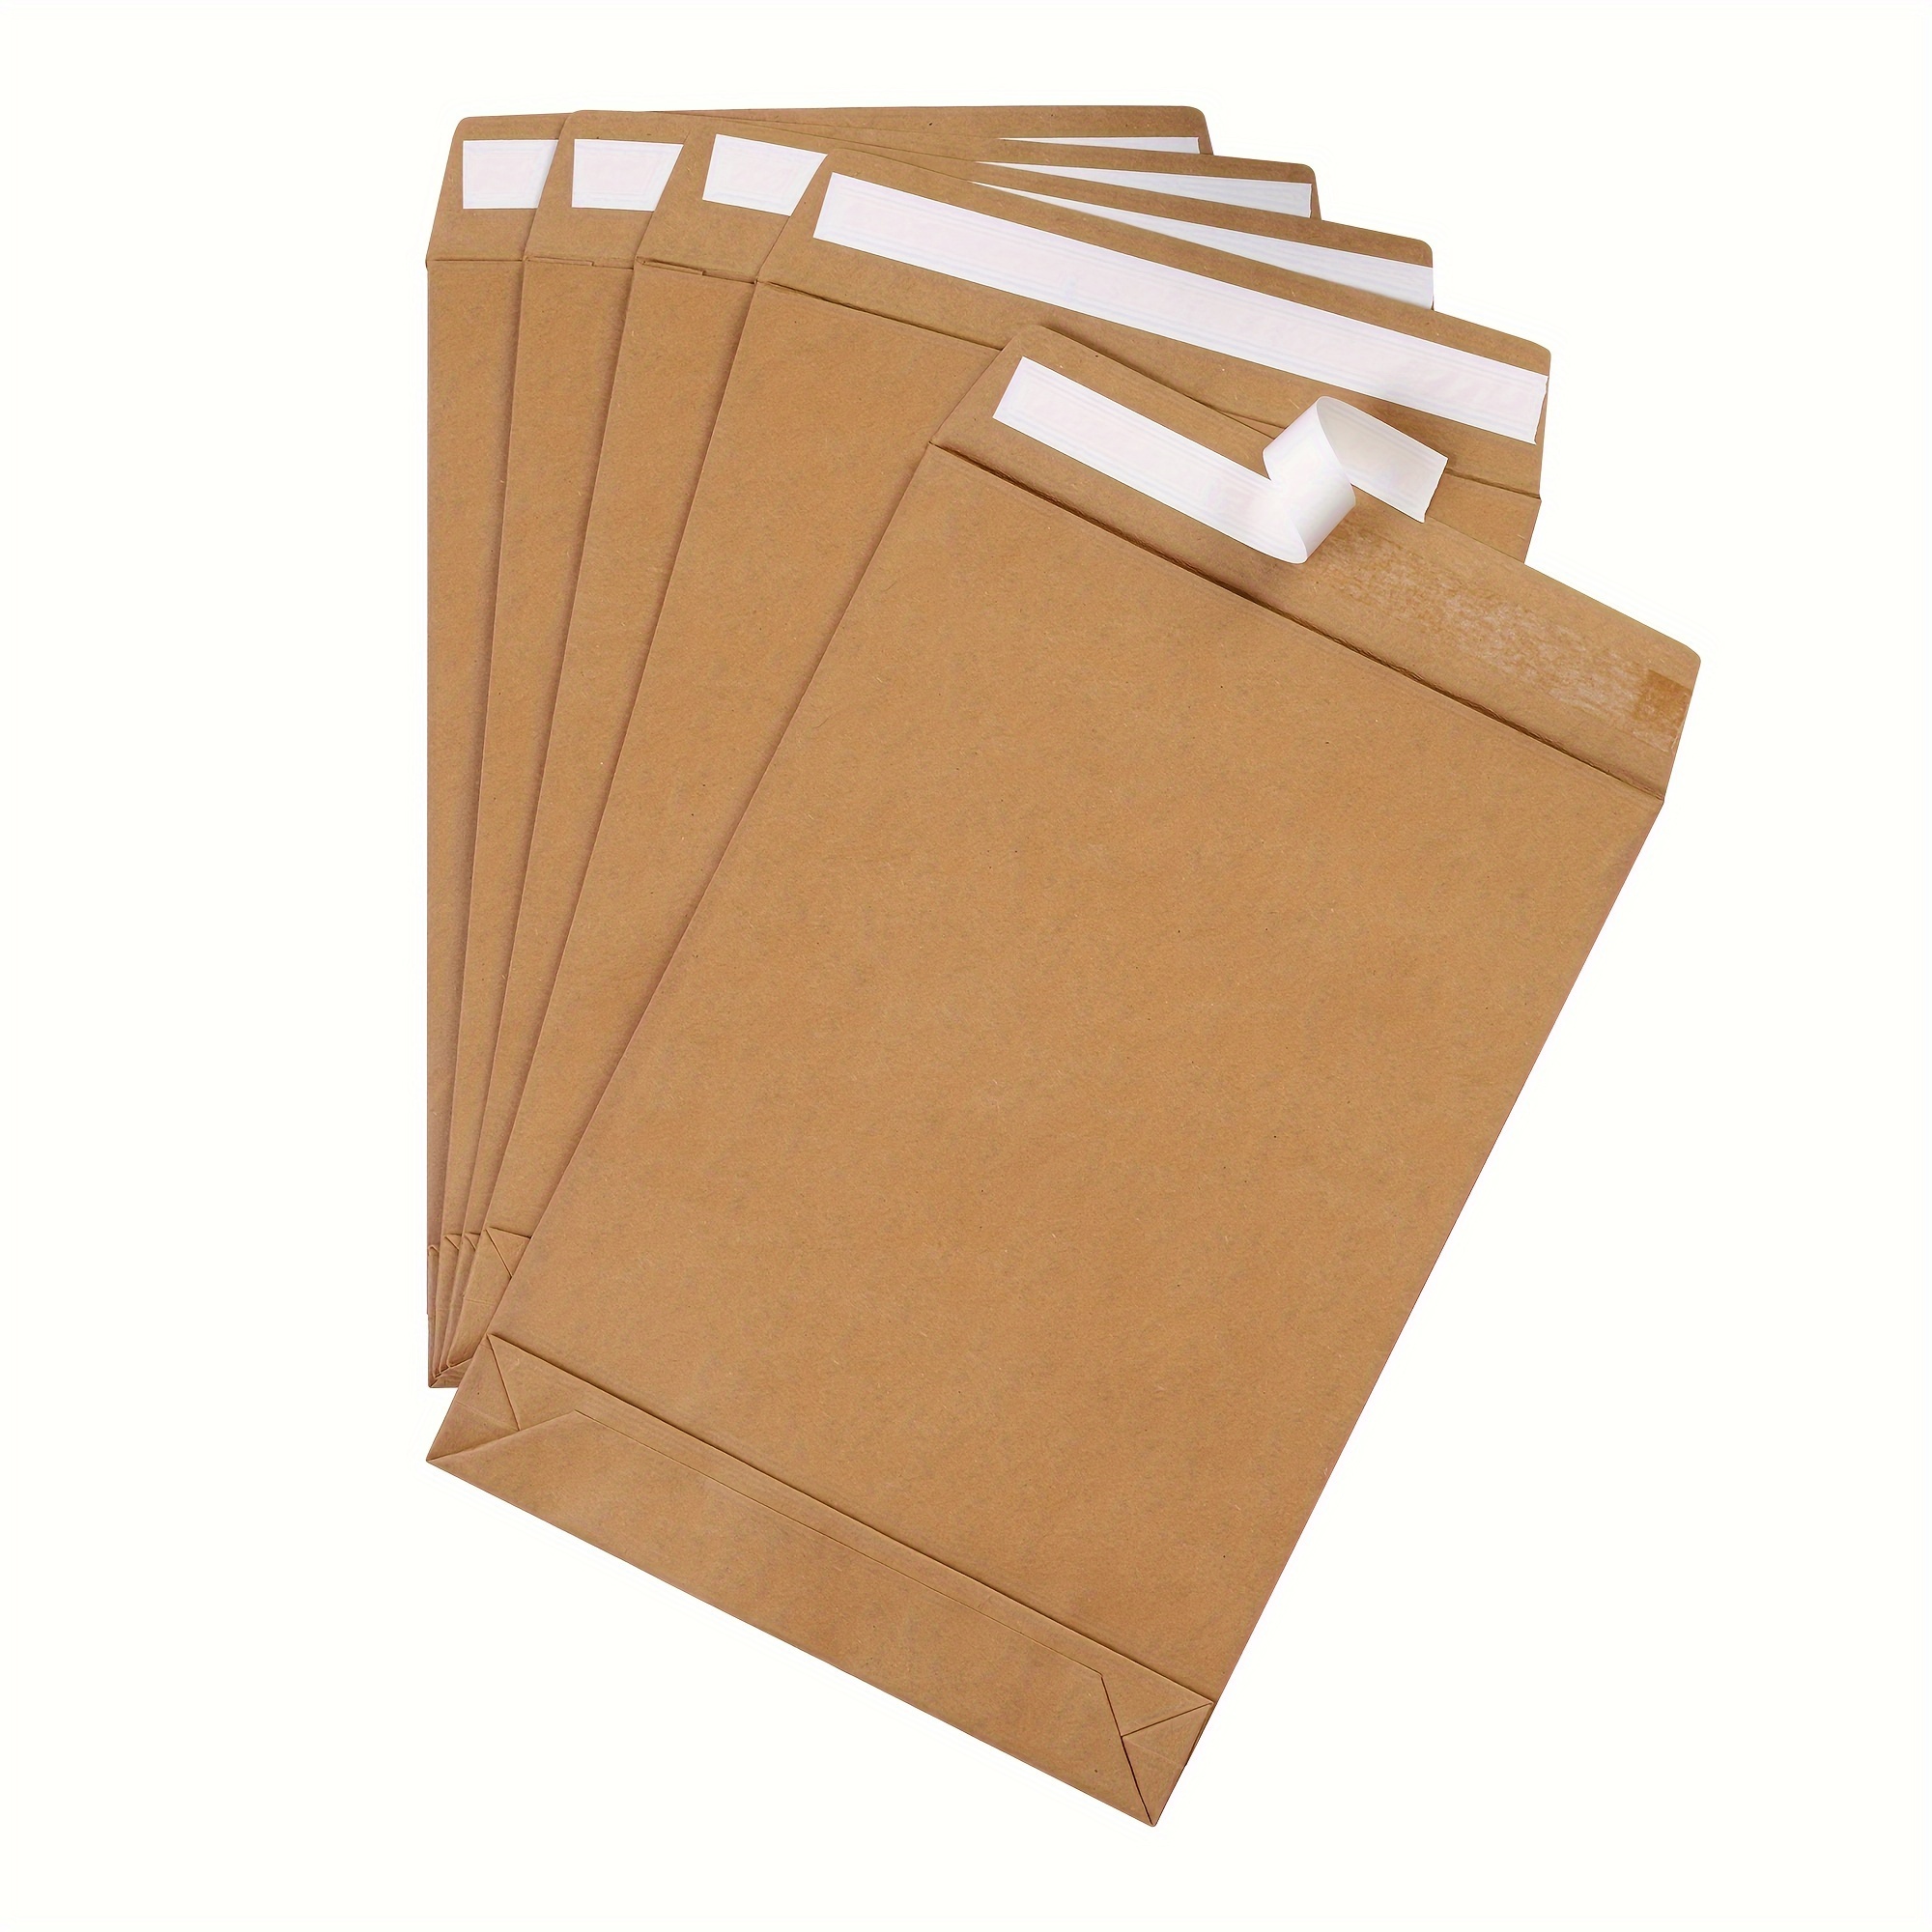 Large Format/Catalog Envelopes